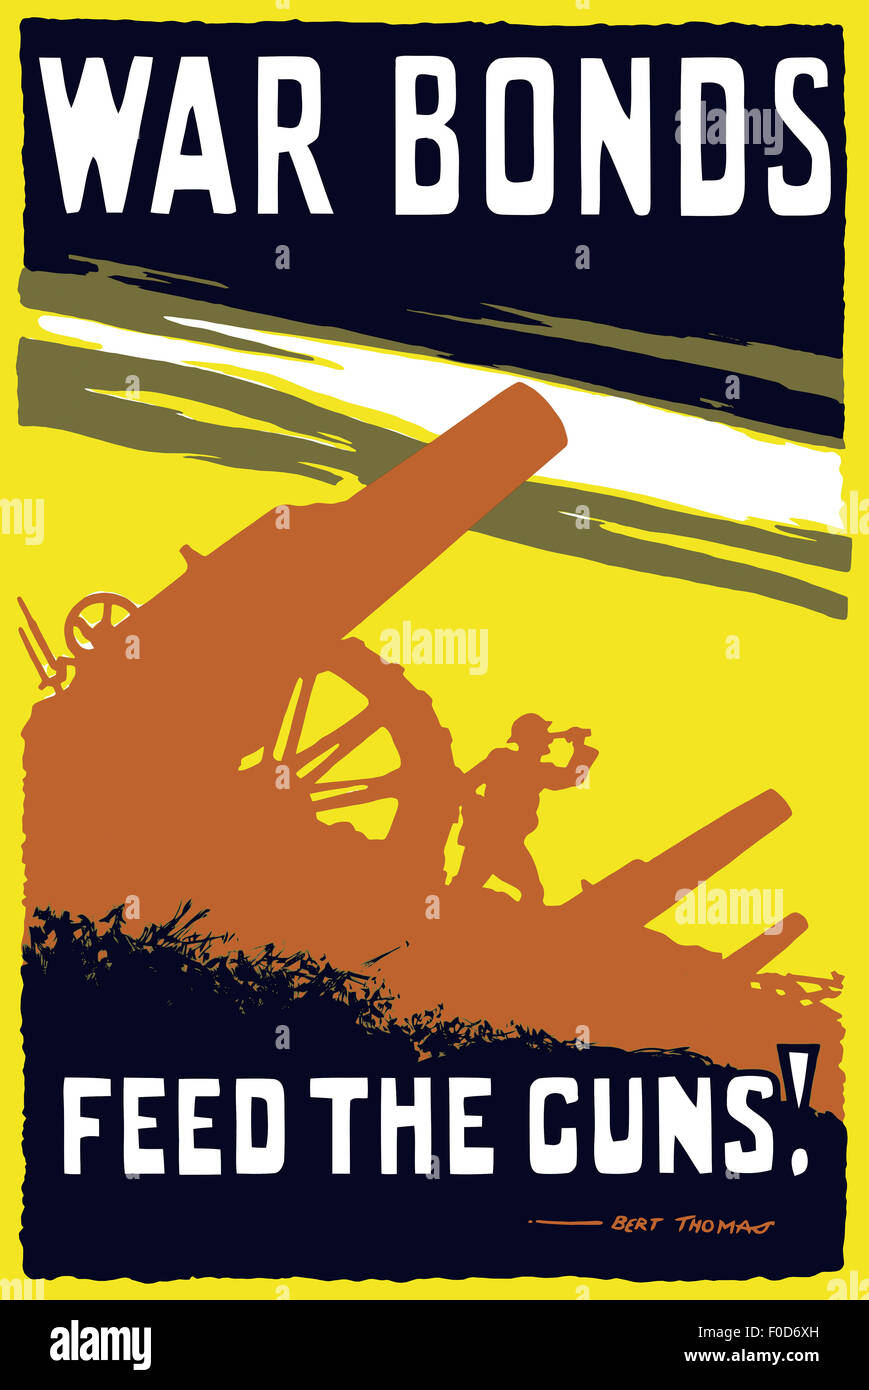 Vintage World War I poster featuring soldiers operating an artillery gun. It reads: War bonds. Feed the guns! Bert Thomas. Stock Photo